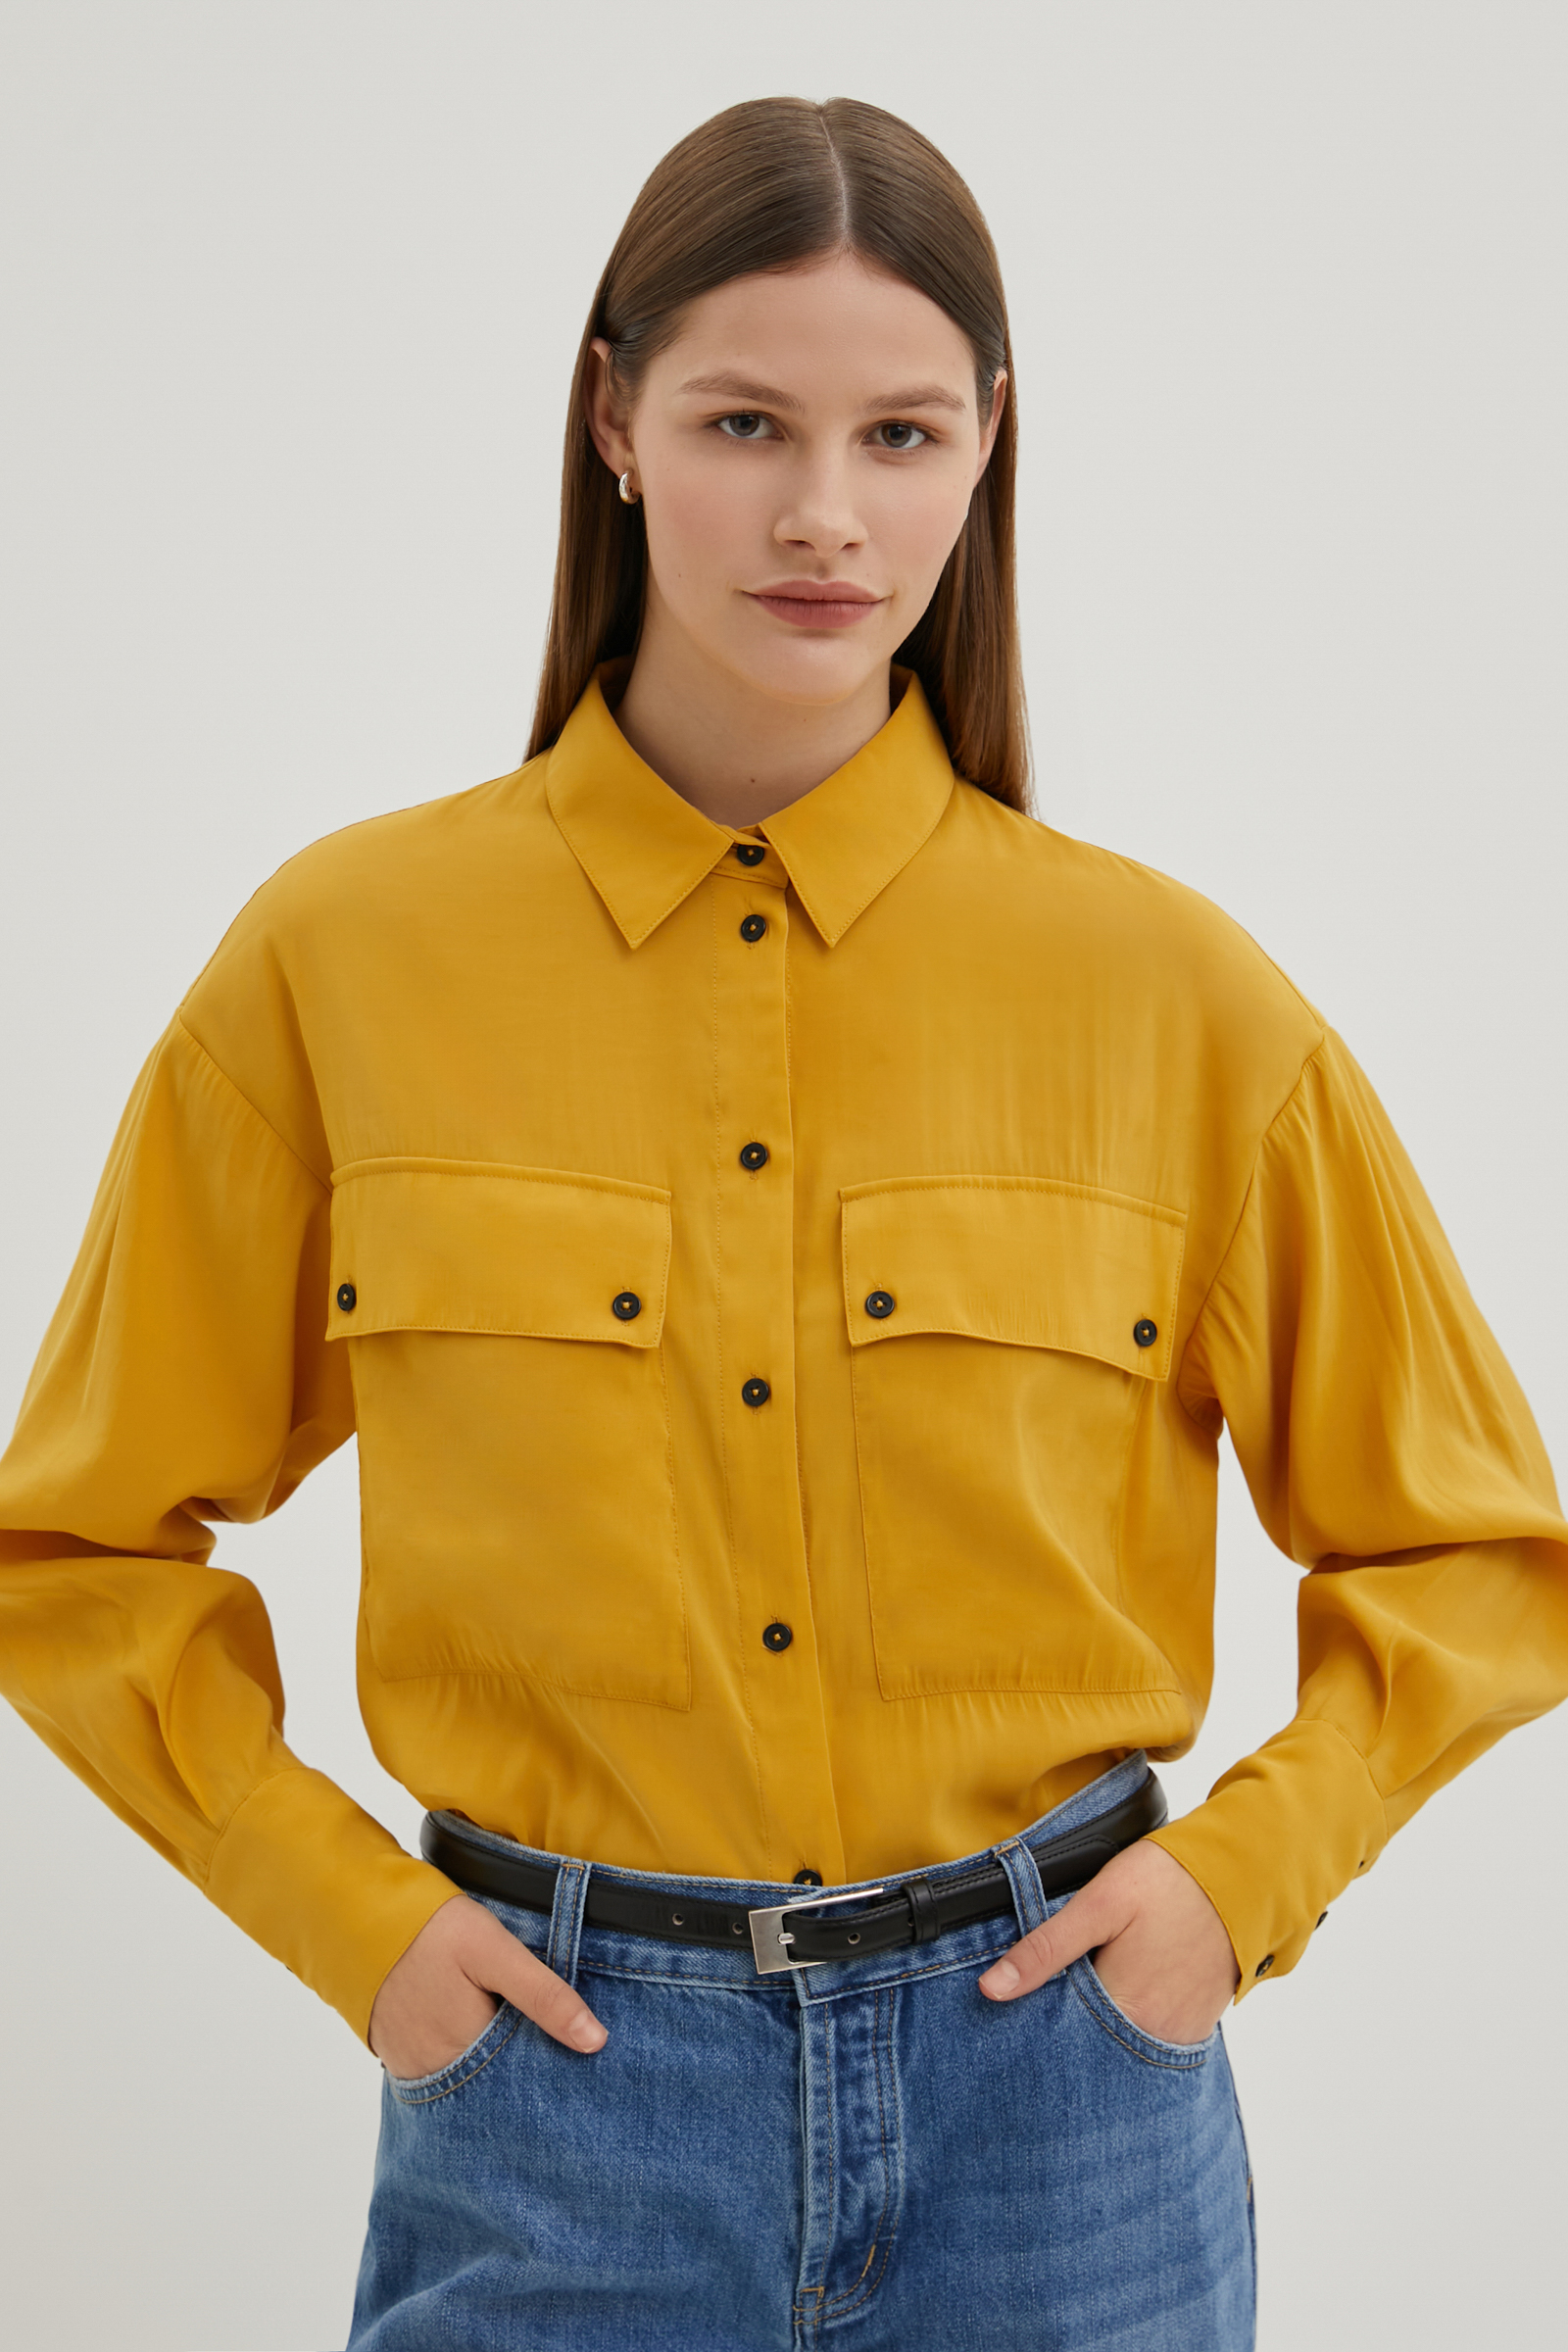 Рубашка женская Finn Flare FBE110105 желтая M